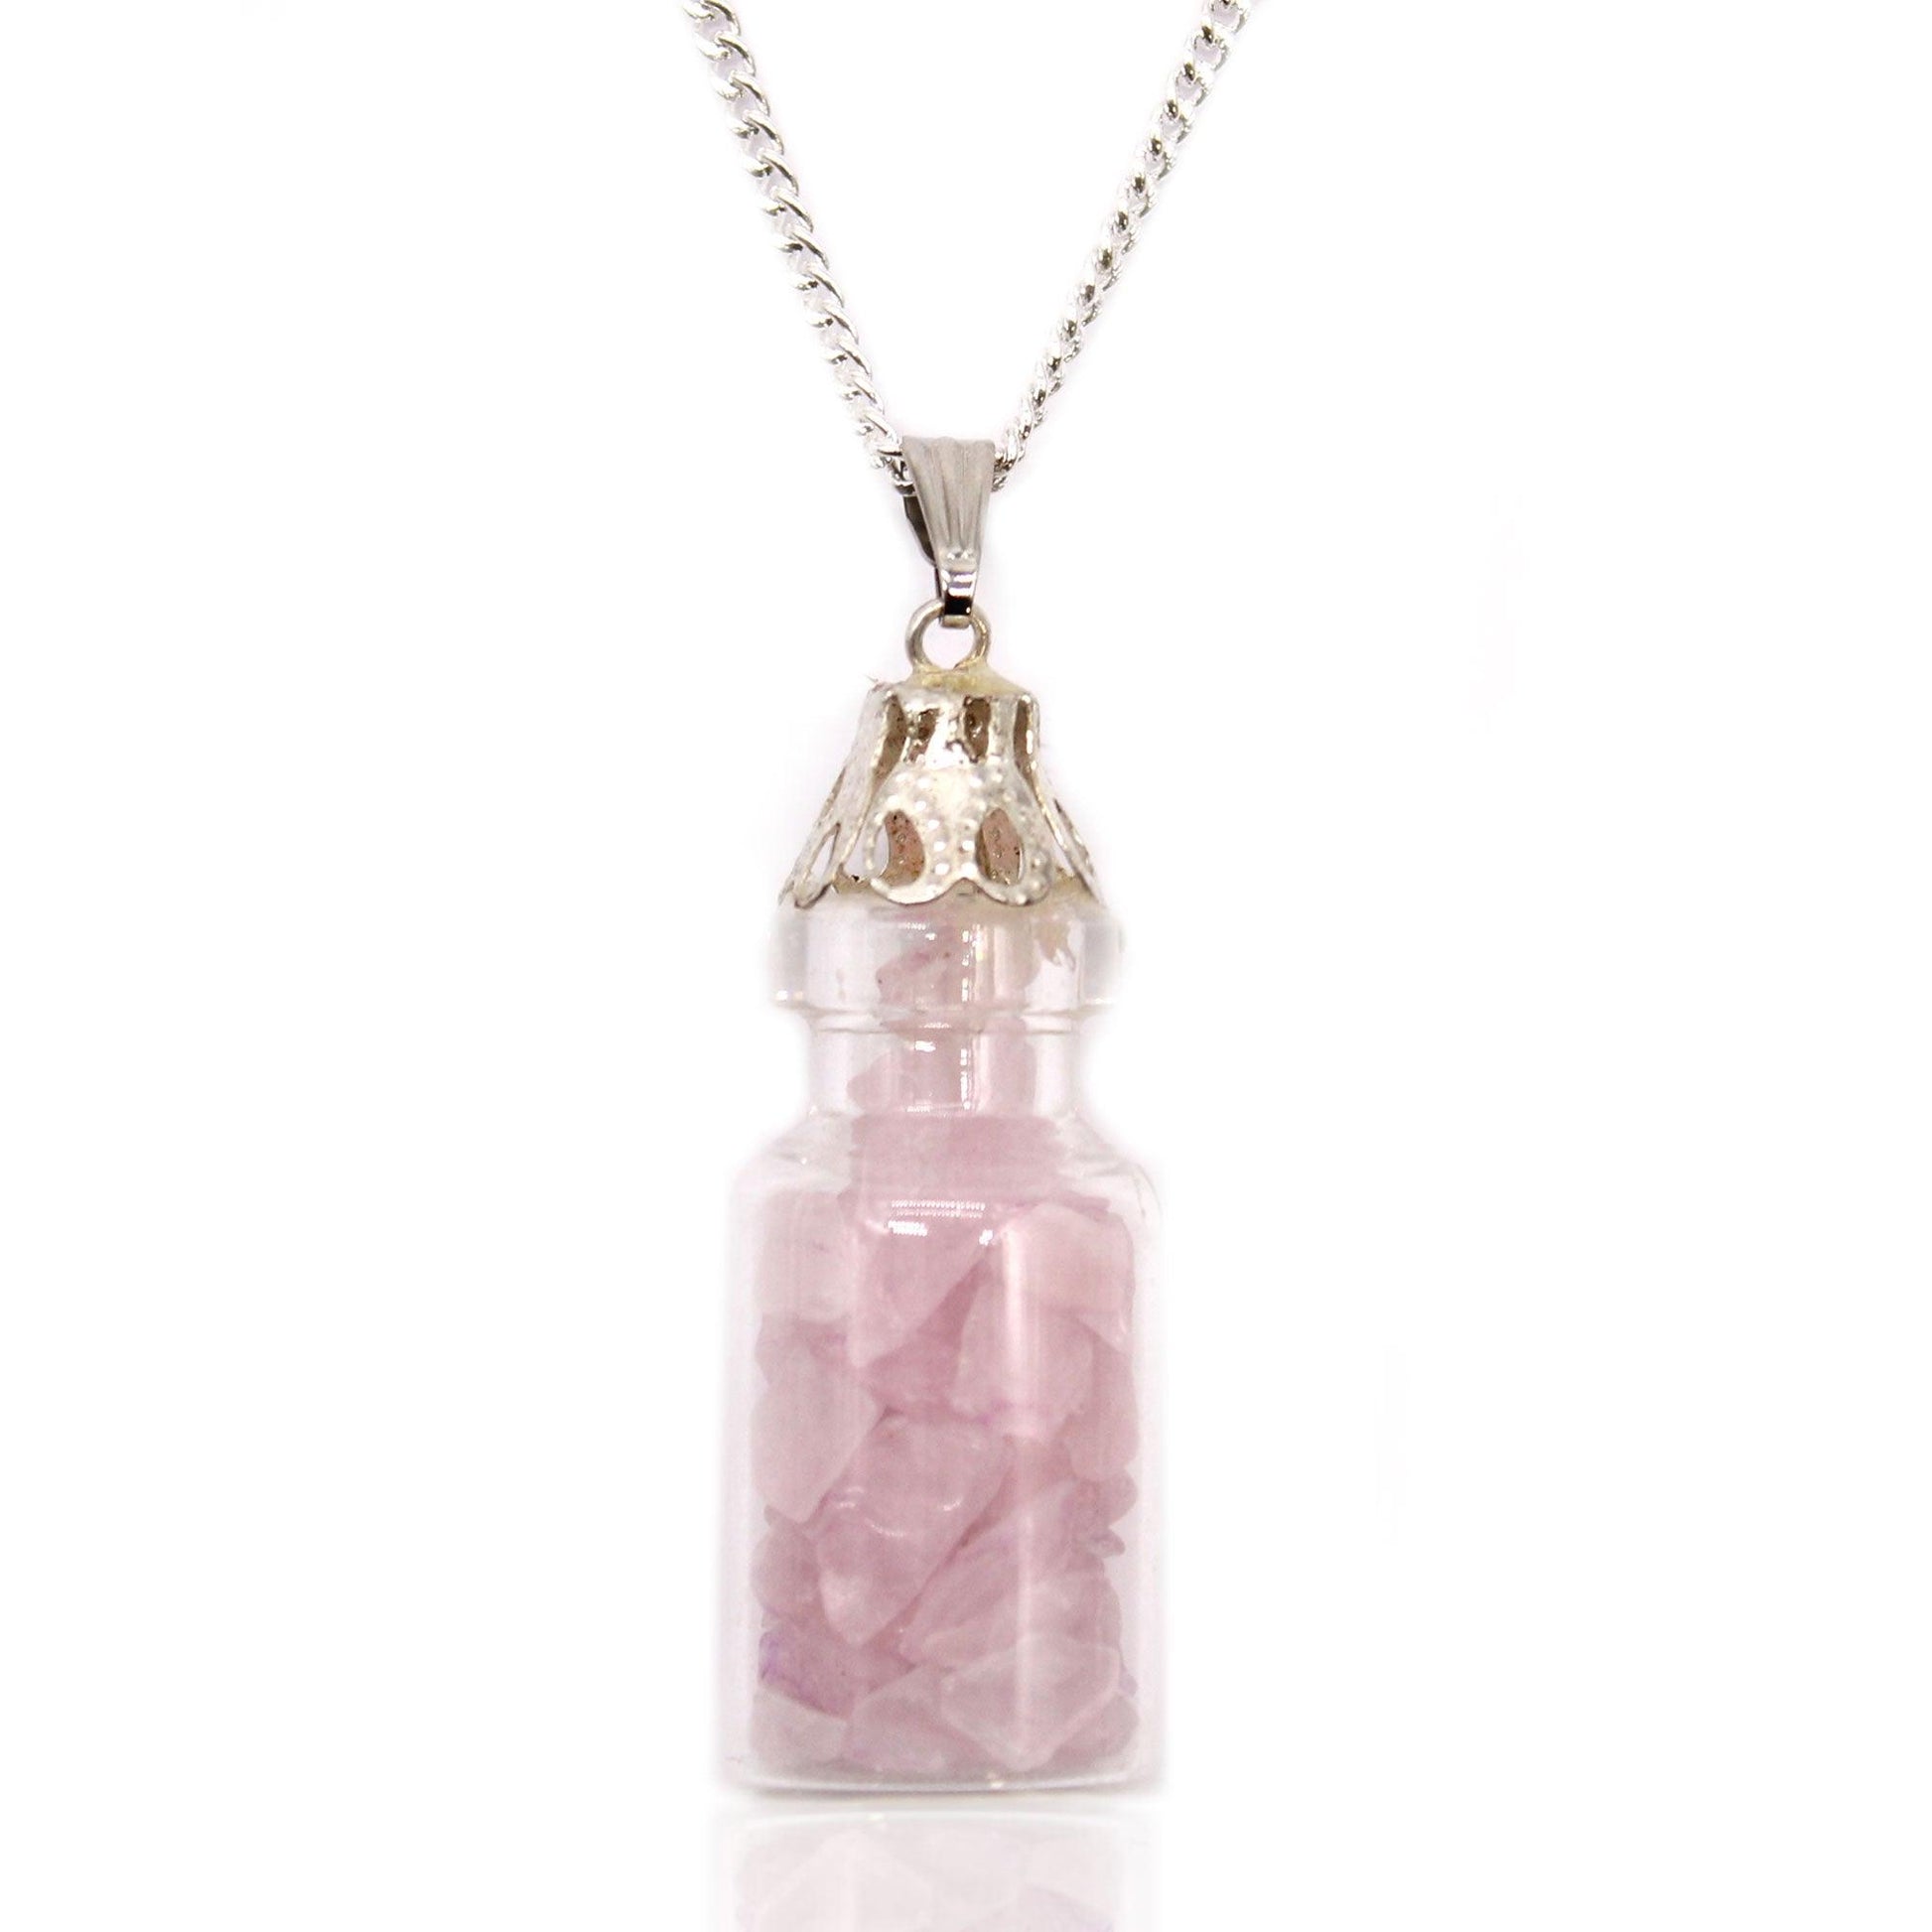 Bottled Gemstones Necklace - Rose Quartz - DuvetDay.co.uk